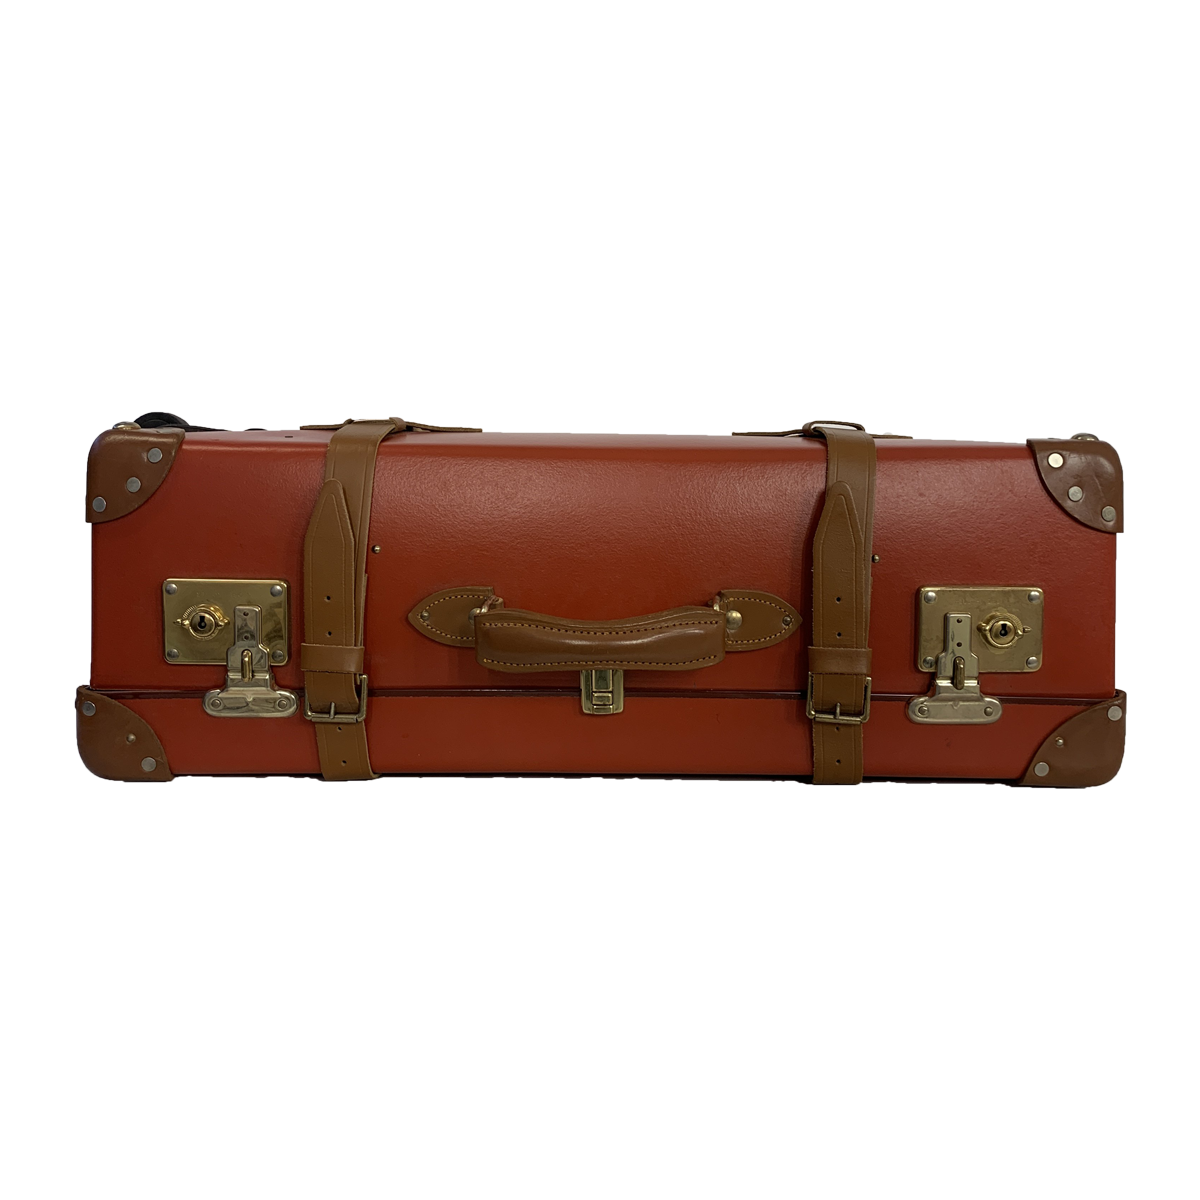 Globetrotter-Globetrotter Koffer Leder-Globetrotter Handtasche-Vintage Globetrotter Etoile Luxury Vintage Amsterdam